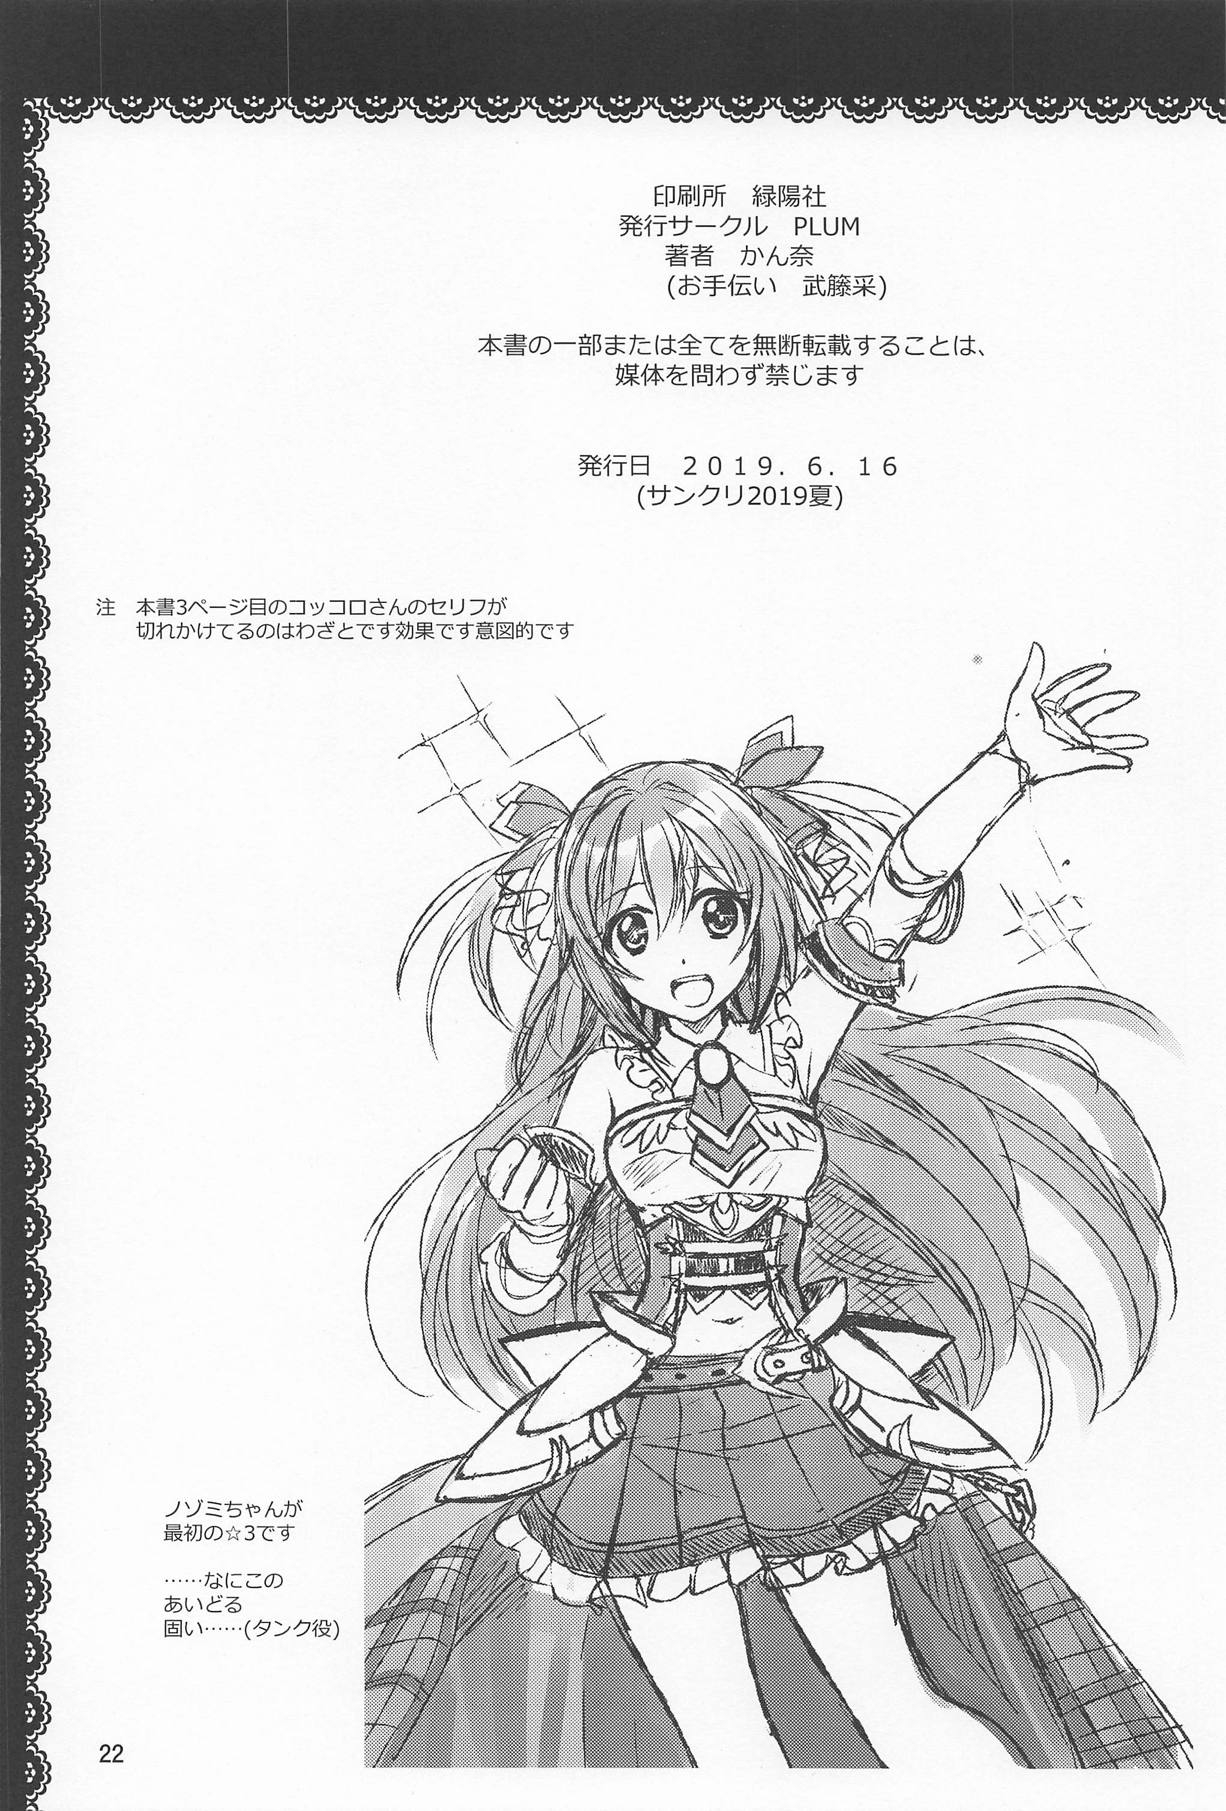 (SC2019 Summer) [PLUM (Kanna)] Aruji-sama ni Naisho no Memory Piece (Princess Connect! Re:Dive) 20